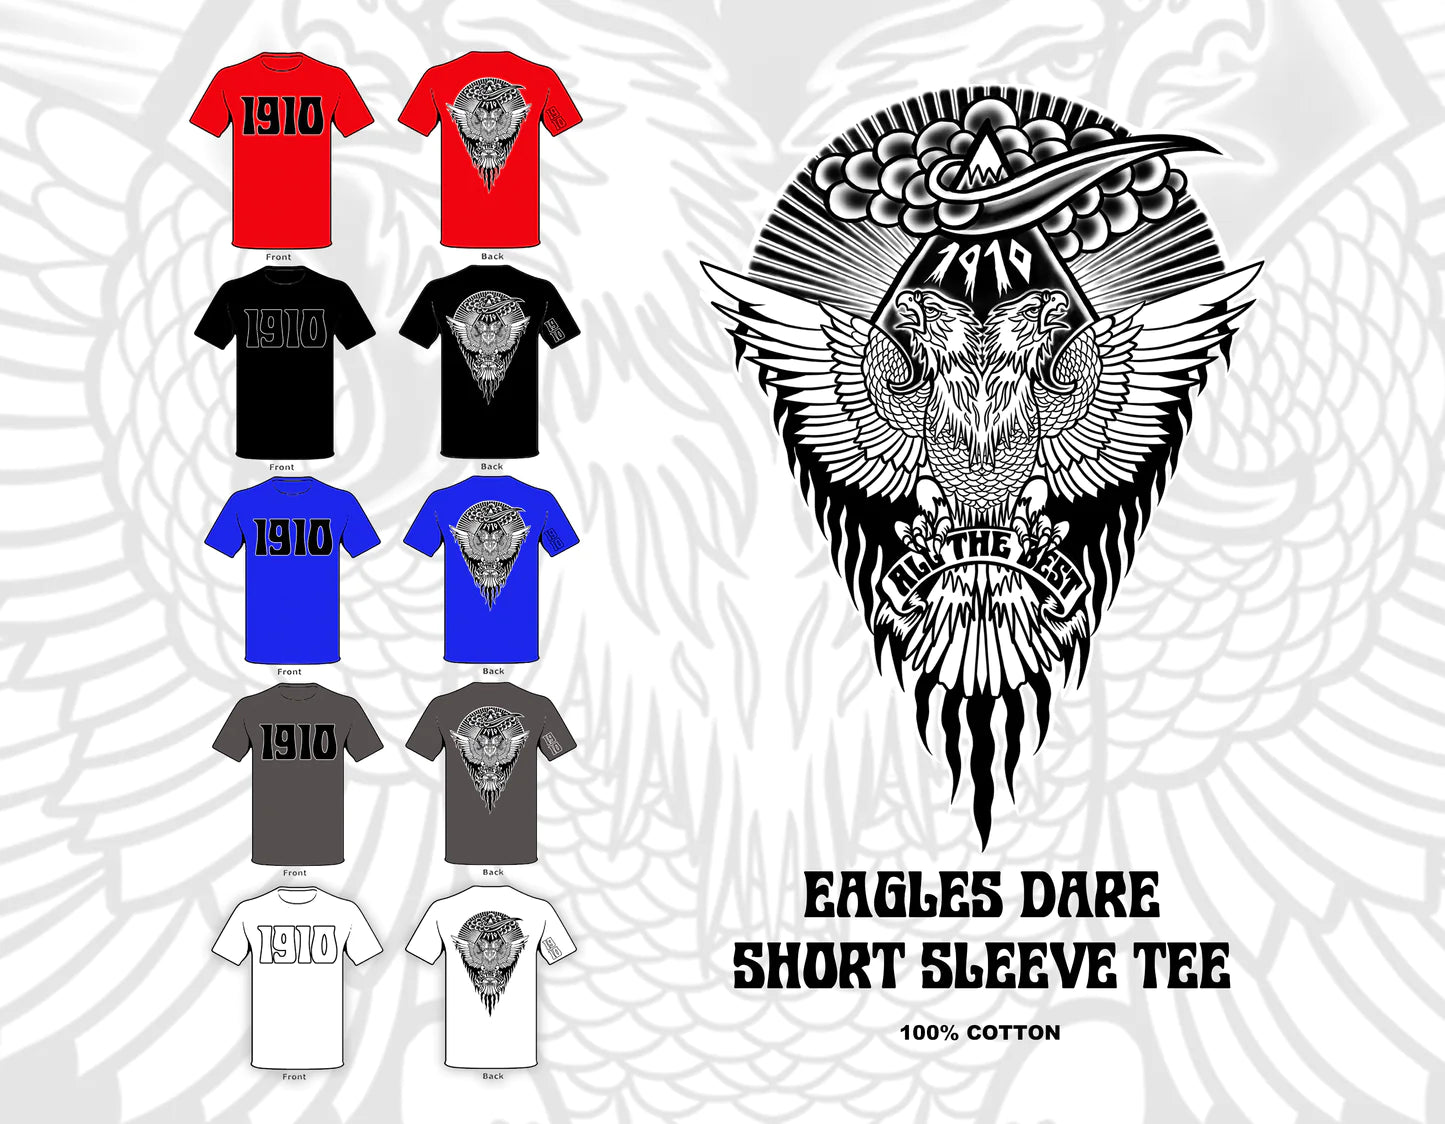 1910 - Eagles Dare S/S T-shirt